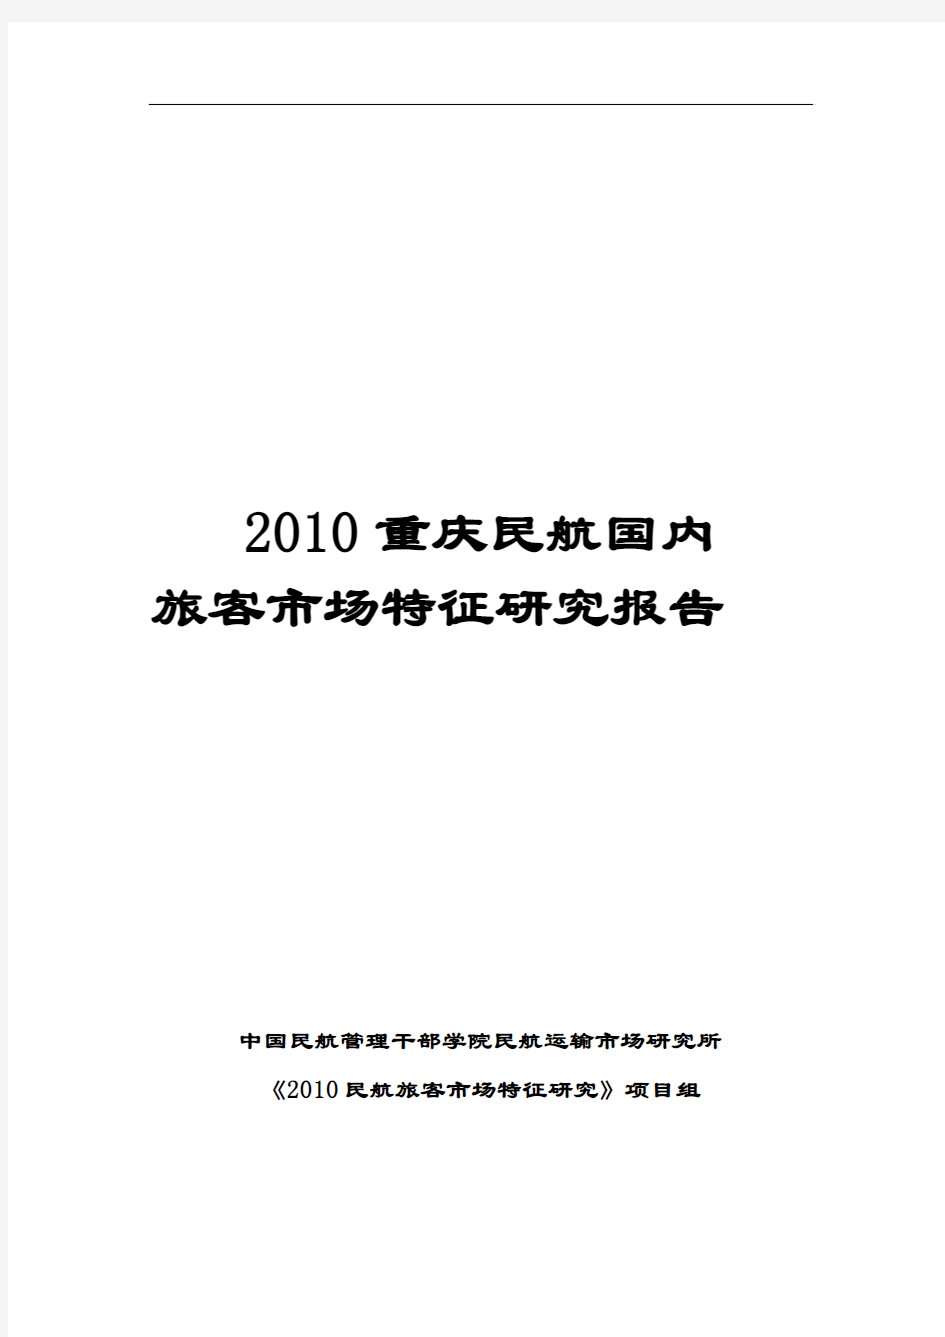 23 2010年重庆民航国内旅客市场特征研究报告(定稿)